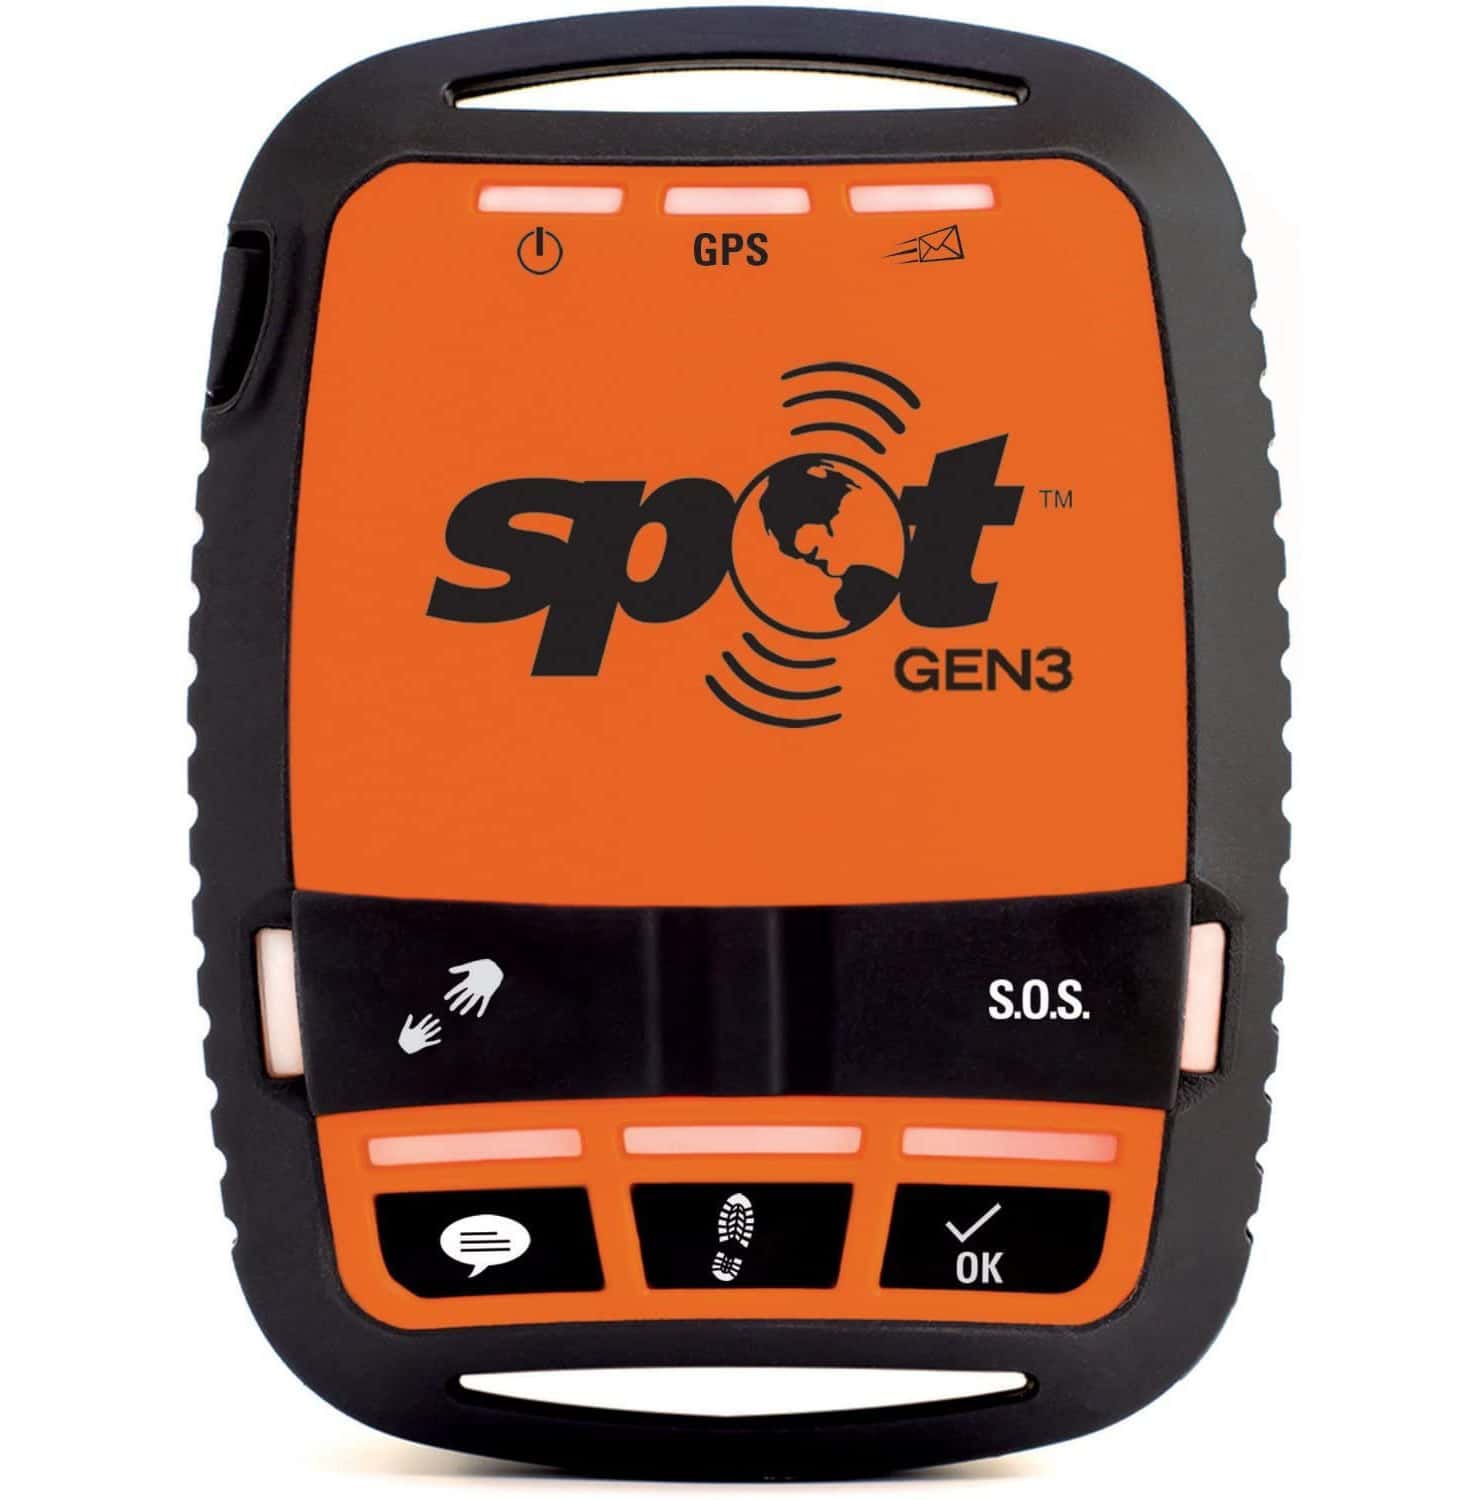 Spot Gen3 gps-tracker Van Voren